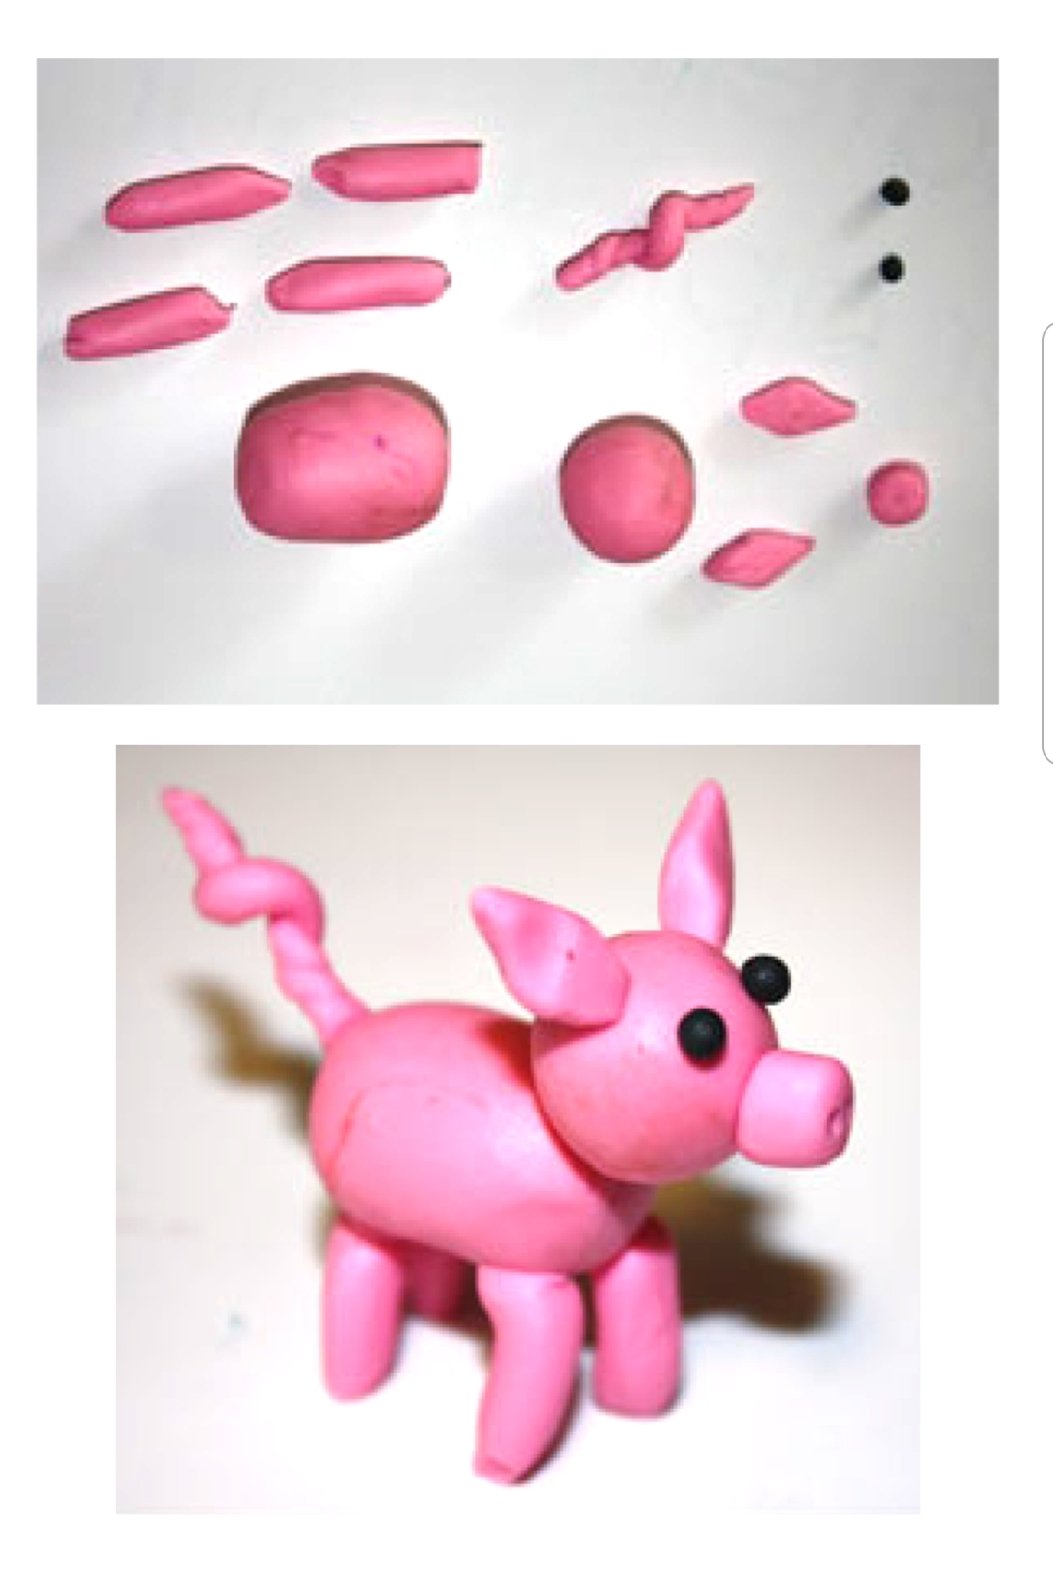 Tutoriel : Modeler un cochon en pate à modeler Patarev - Idées conseils et  tuto Activité manuelle enfant